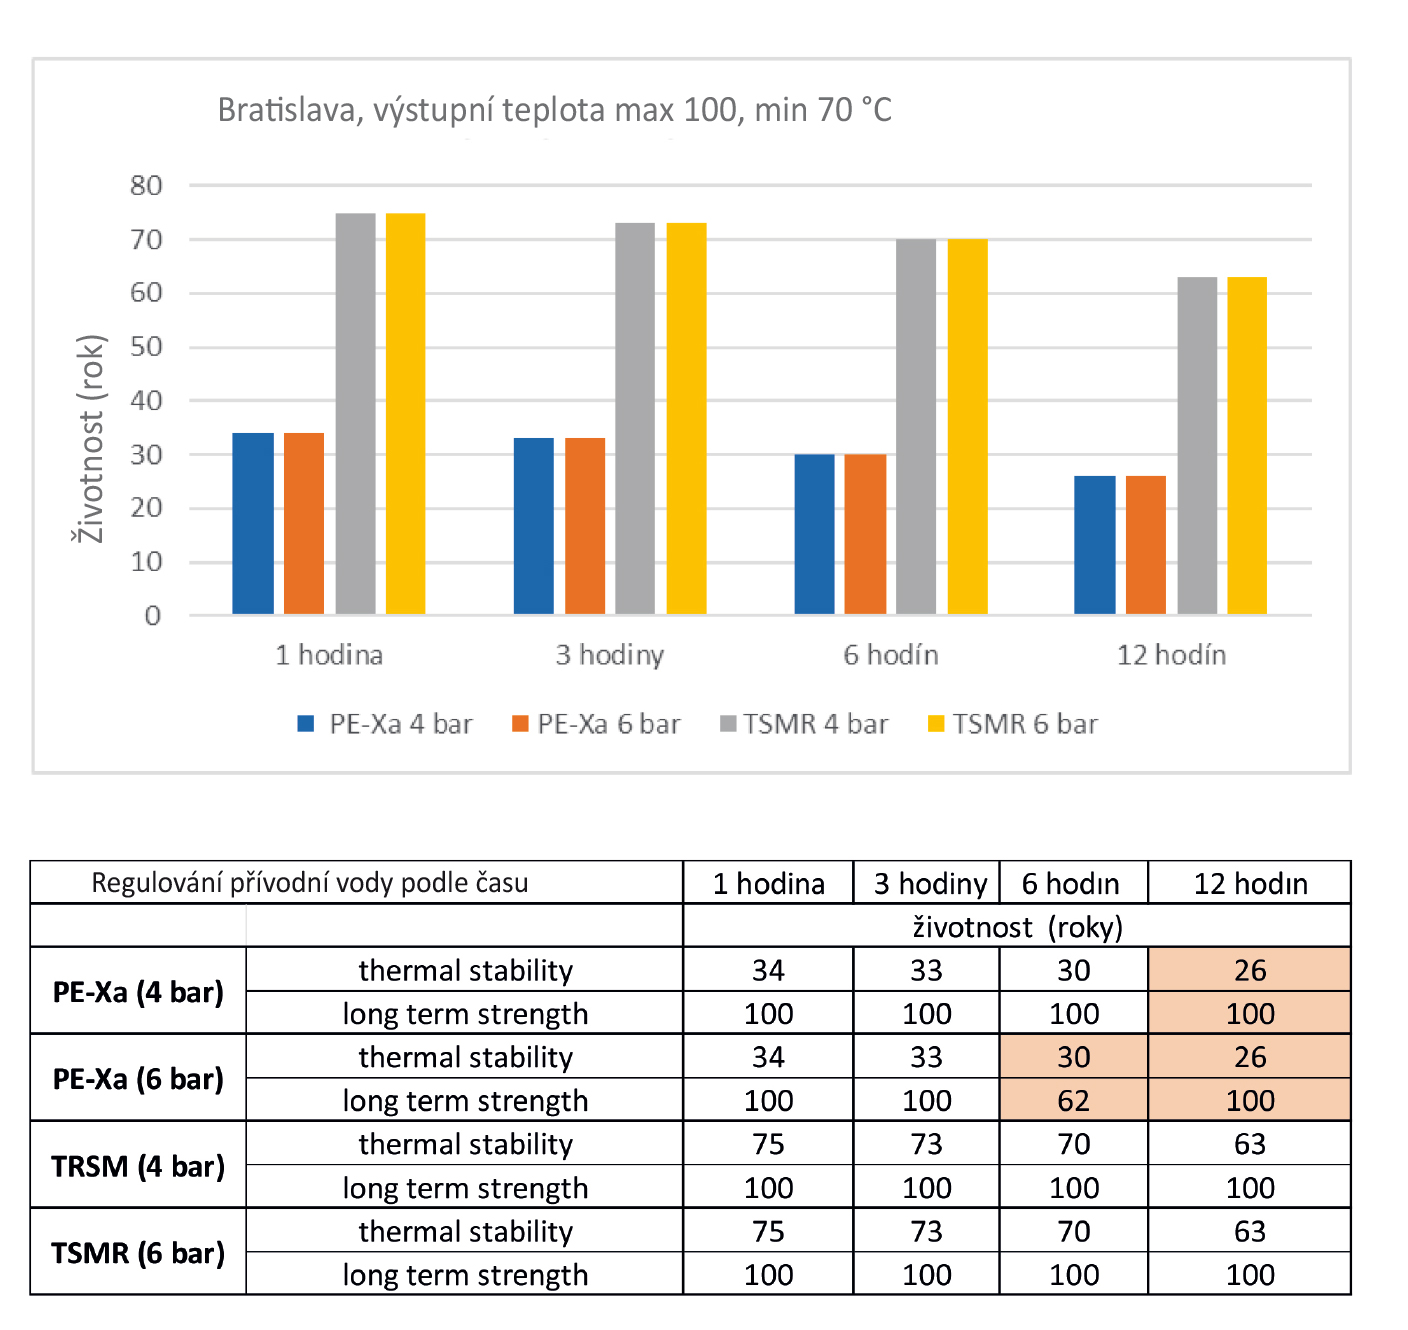 Obr. 5 Vyhodnocení životnosti potrubí reprezentativní křivky s výstupní teplonosnou látkou max. 100 °C, min. 70 °C pro nejchladnější rok 2006 pro Bratislavu, s regulací teploty přívodní vody po jedné hodině, třech hodinách, šesti a dvanácti hodinách. TSMR – termoplasticky zesílená médionosná trubka s aramidovým vláknem